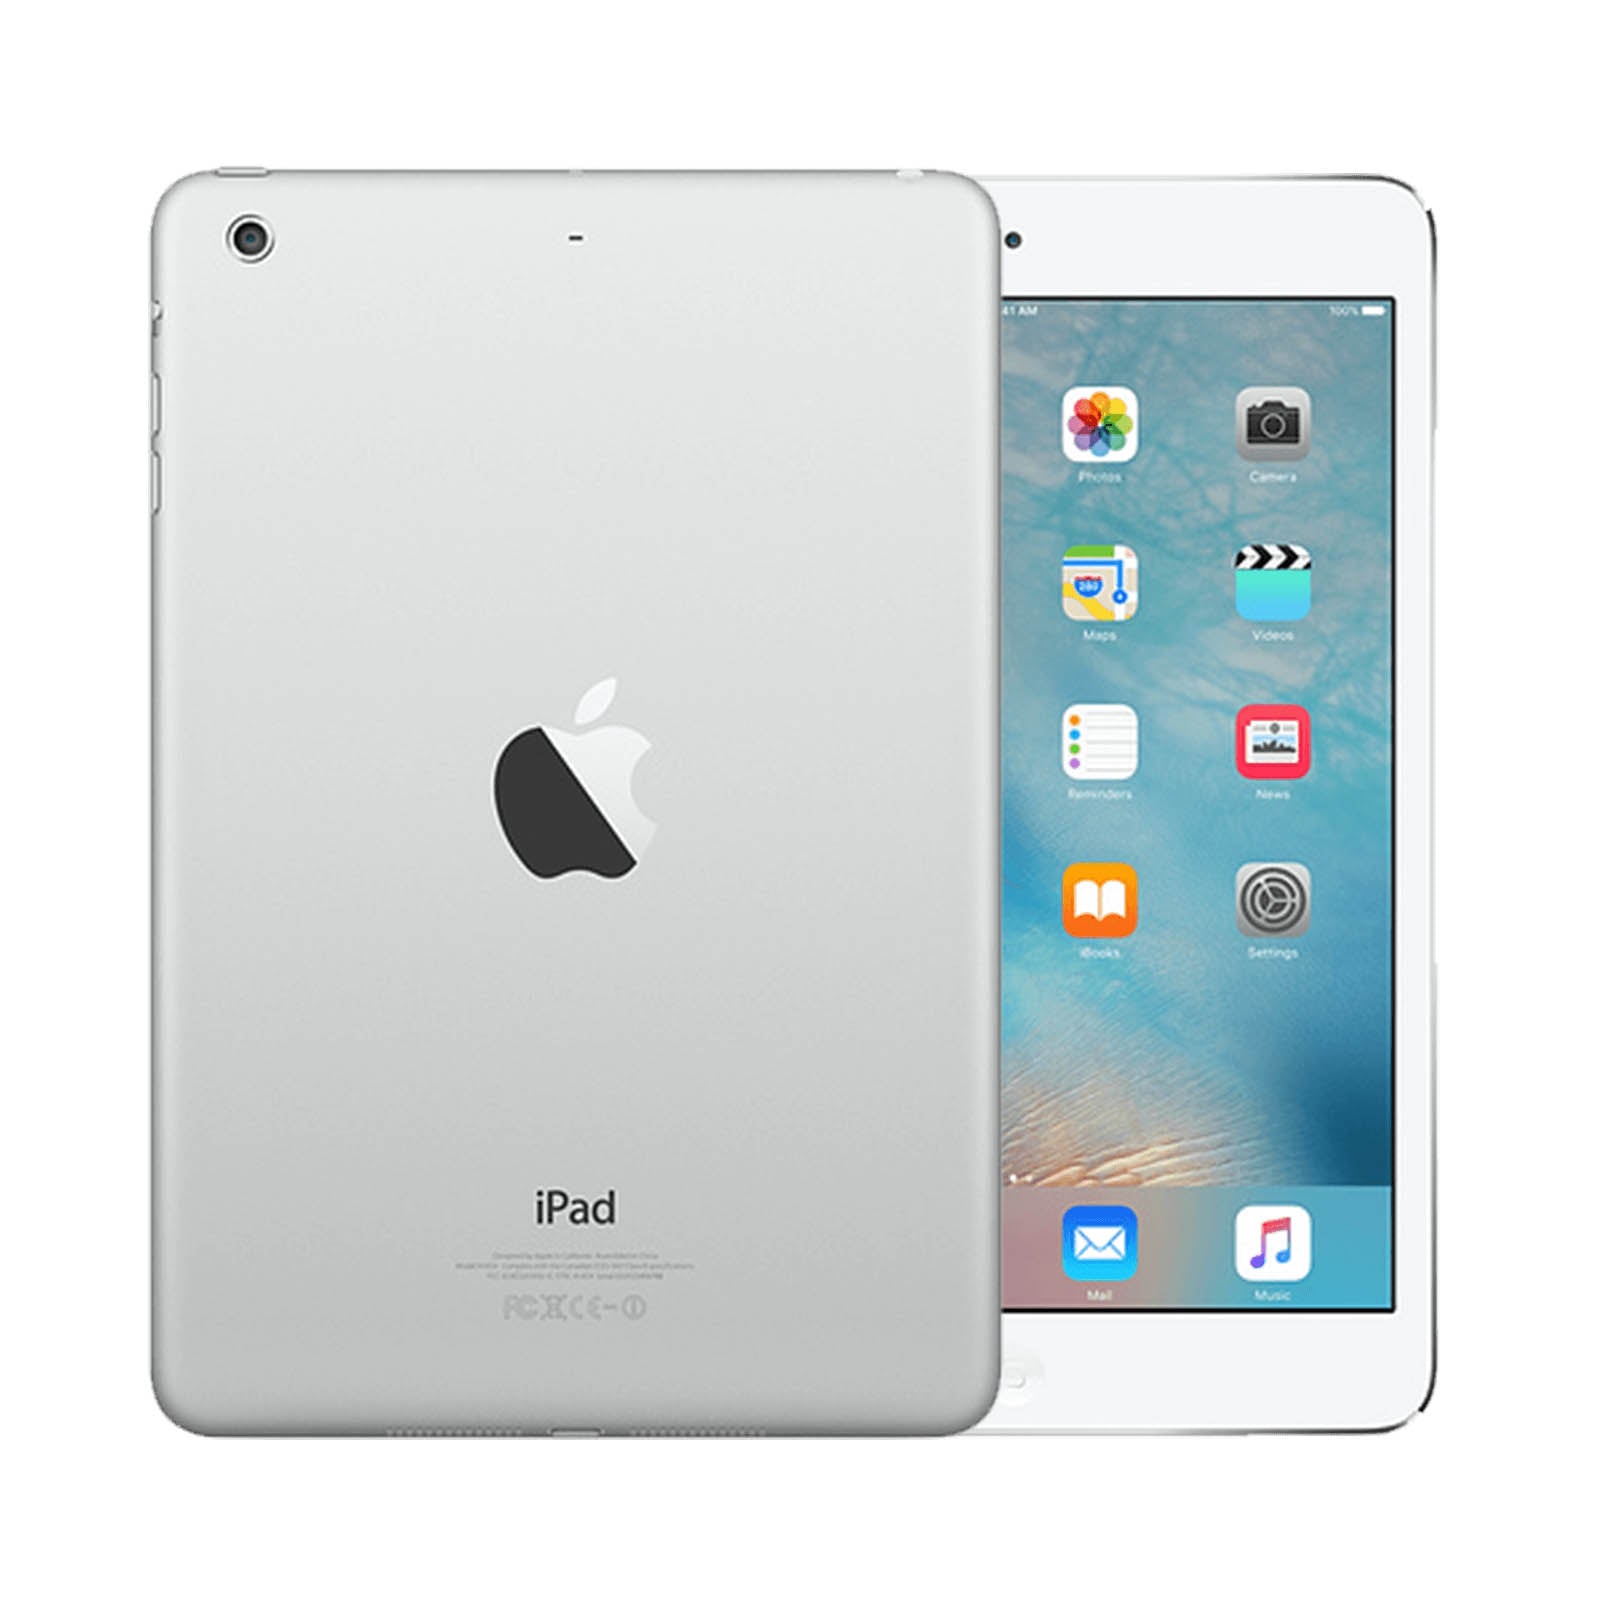 Apple iPad mini 2 128GB White Pristine - Unlocked